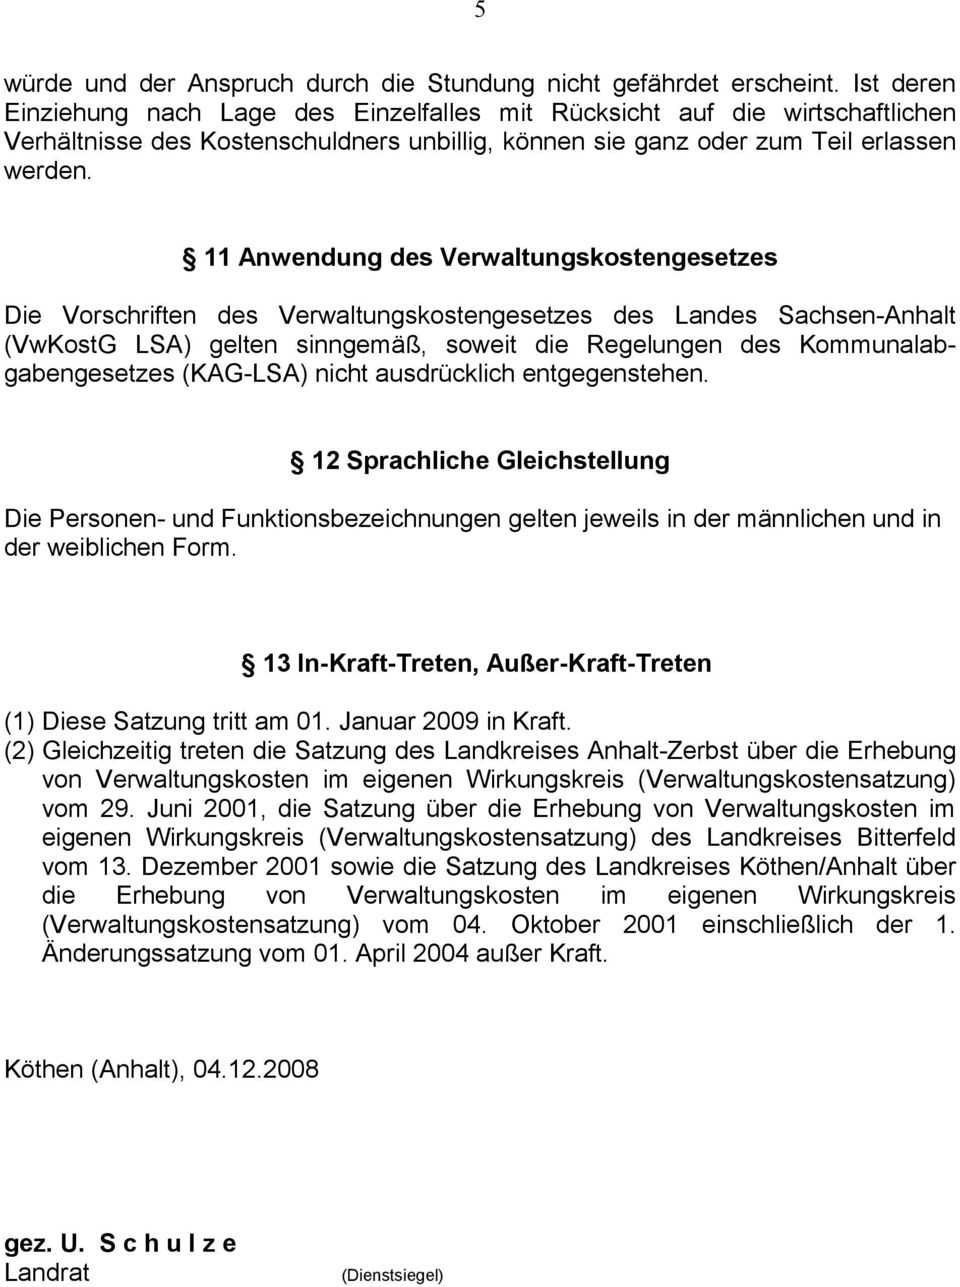 Anwendung des Verwaltungskostengesetzes Die Vorschriften des Verwaltungskostengesetzes des Landes Sachsen-Anhalt (VwKostG LSA) gelten sinngemäß, soweit die Regelungen des Kommunalabgabengesetzes